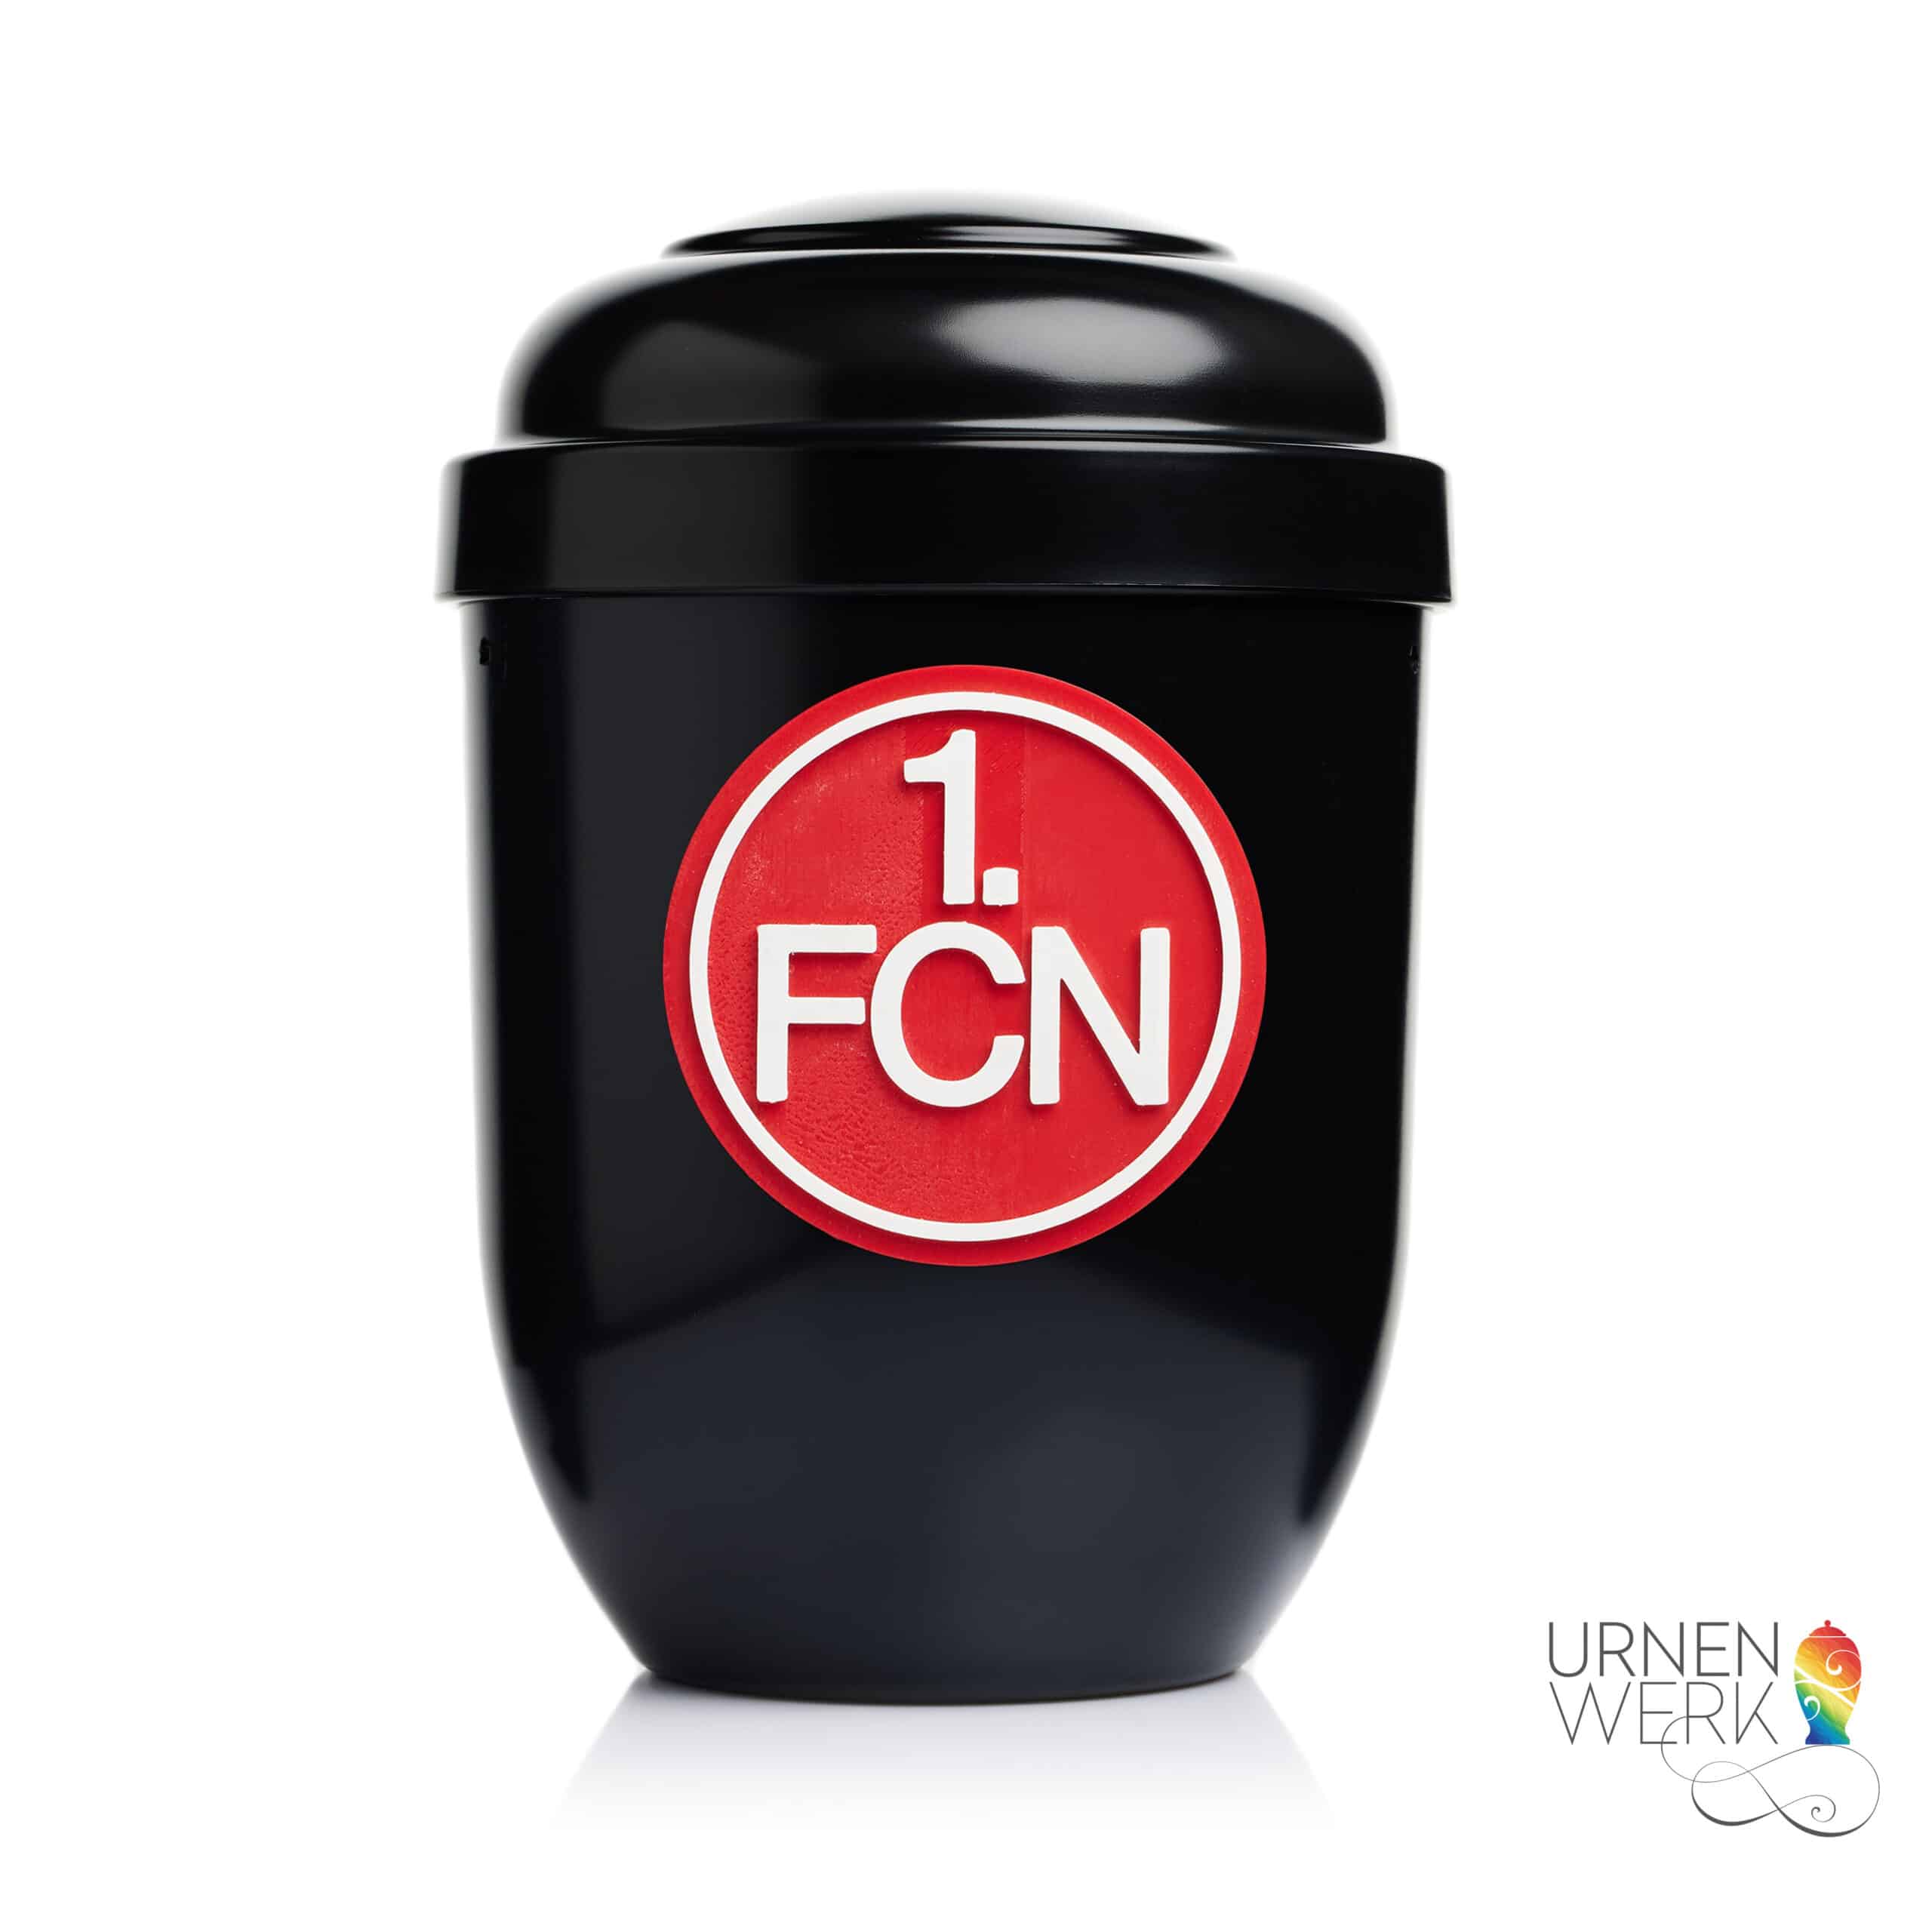 Urne mit 3D Logo hier 1.Fc Nürnberg - Logowahl